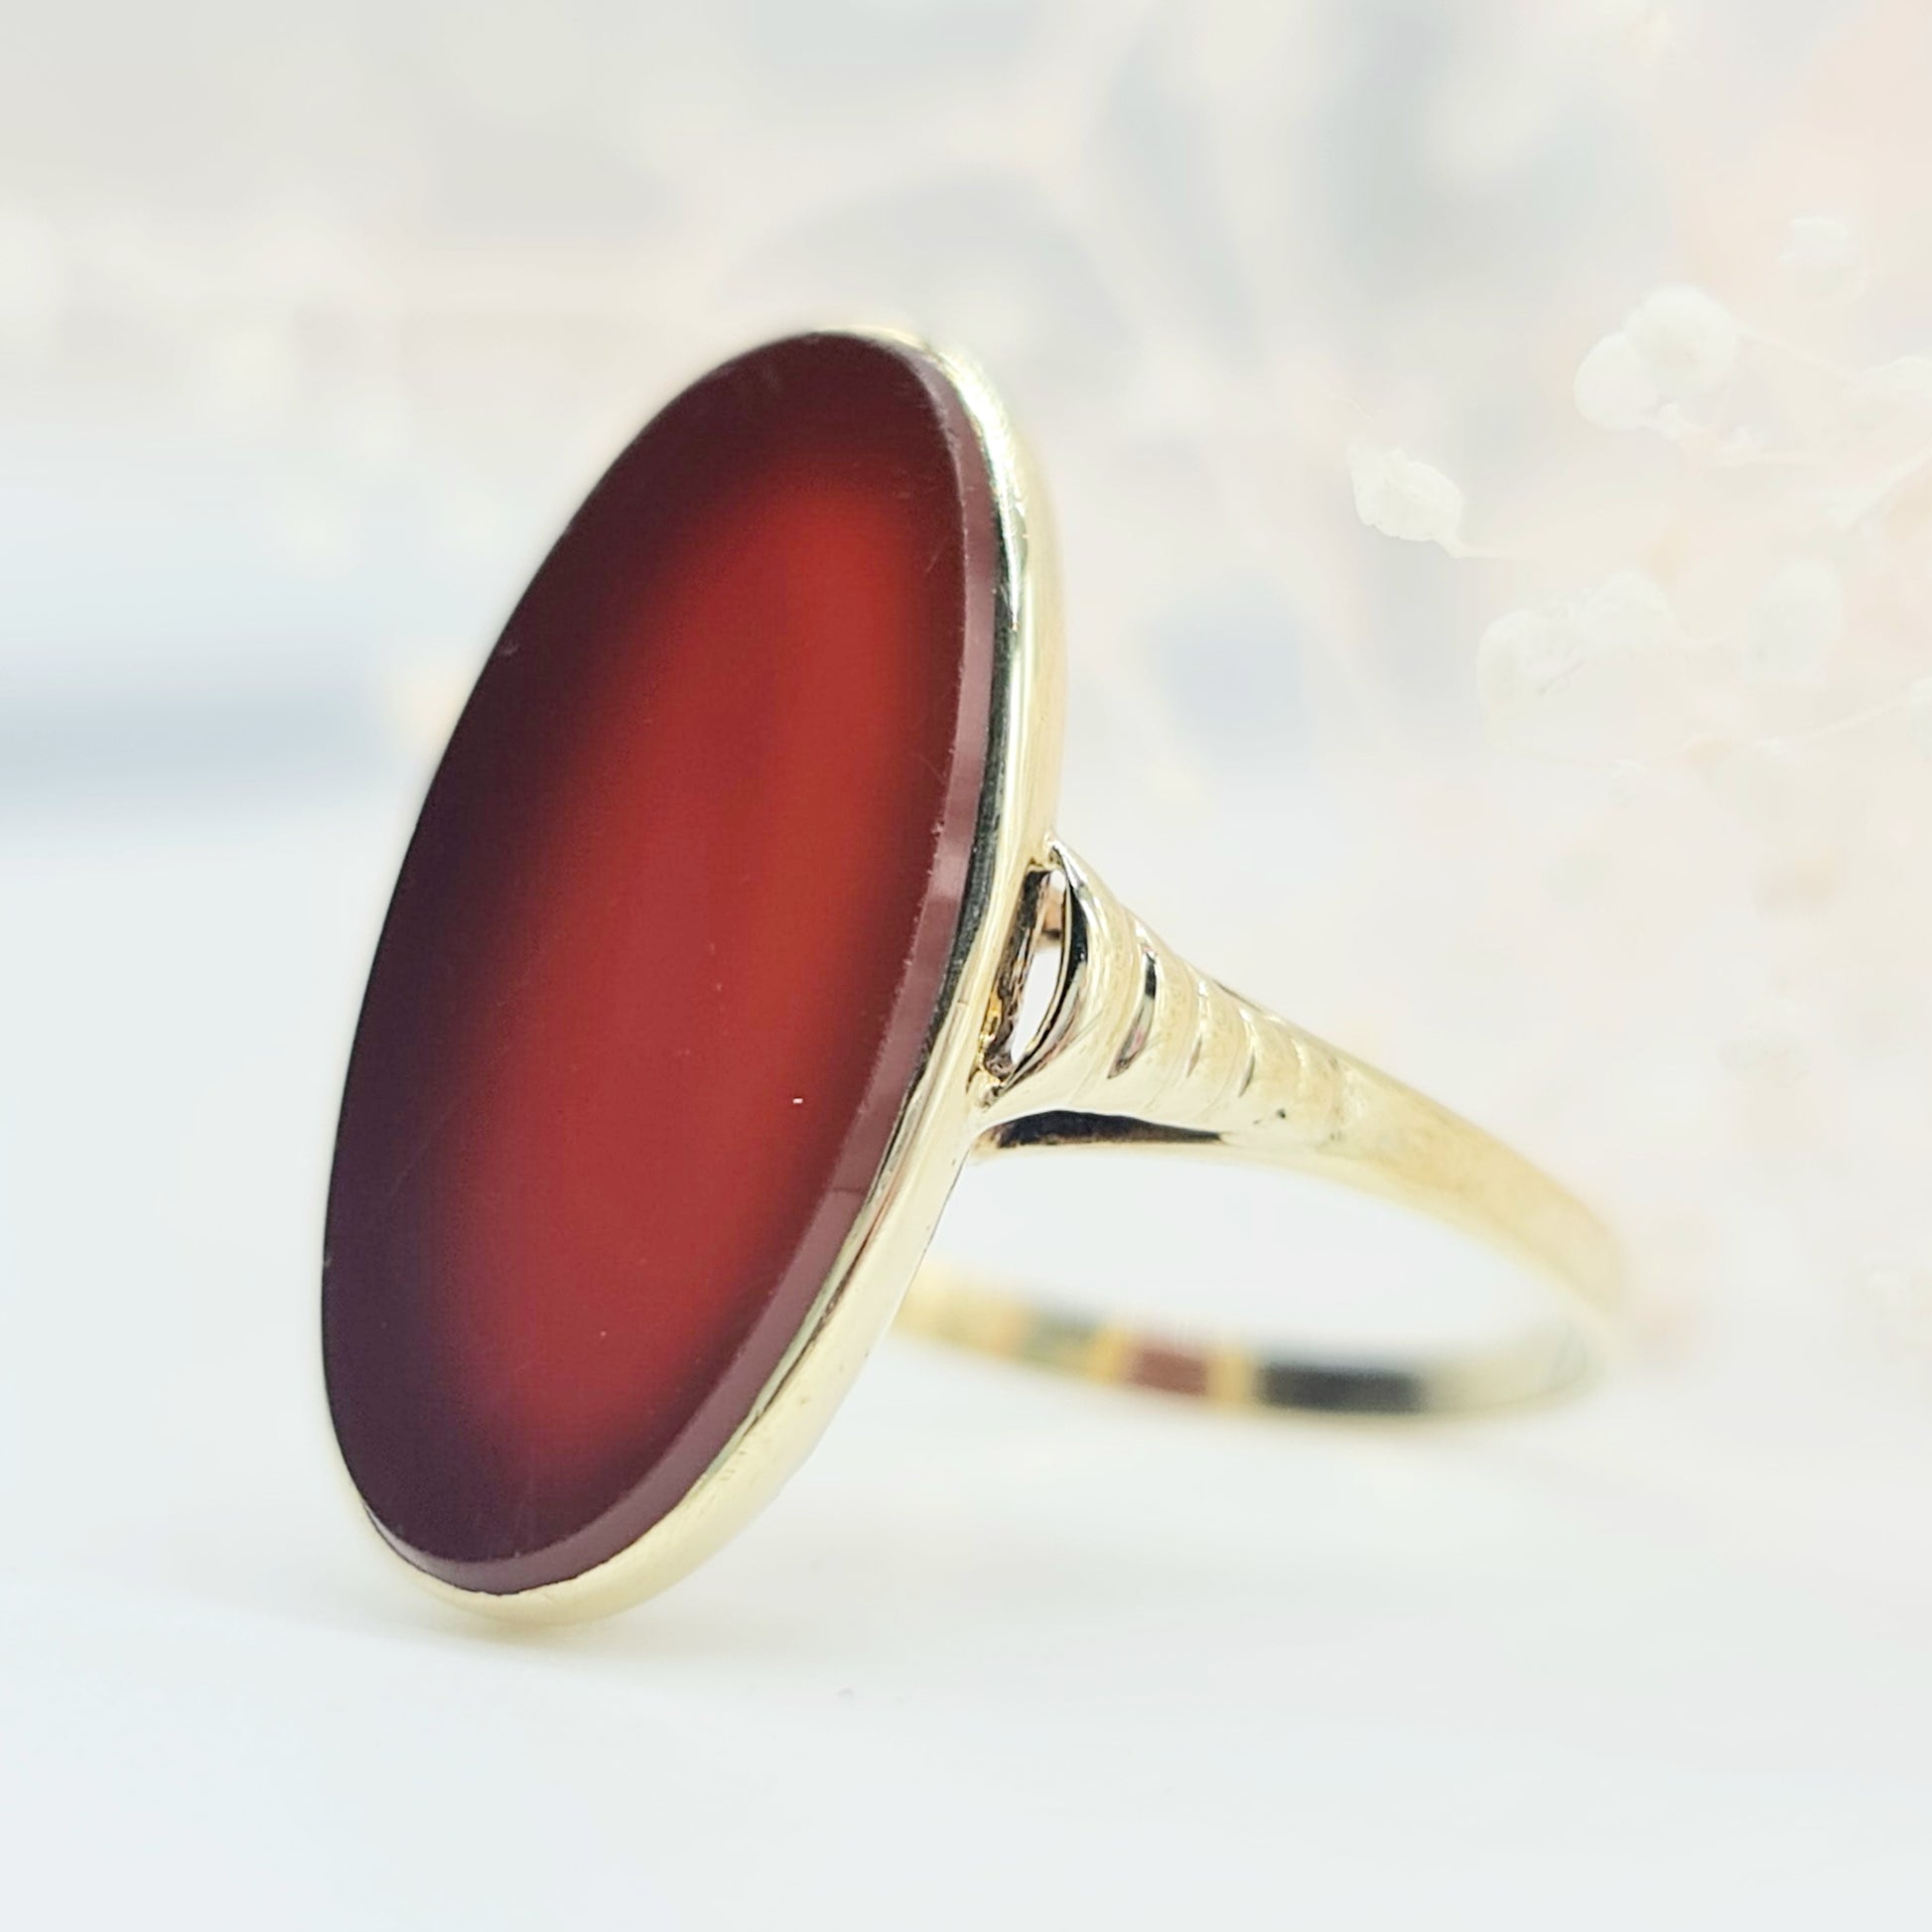 Ovaler Vintage Carneol Ring mit Spiegelschliff und kunstvoll von Hand gravierte Fassung aus 585 14 kt Gelbgold